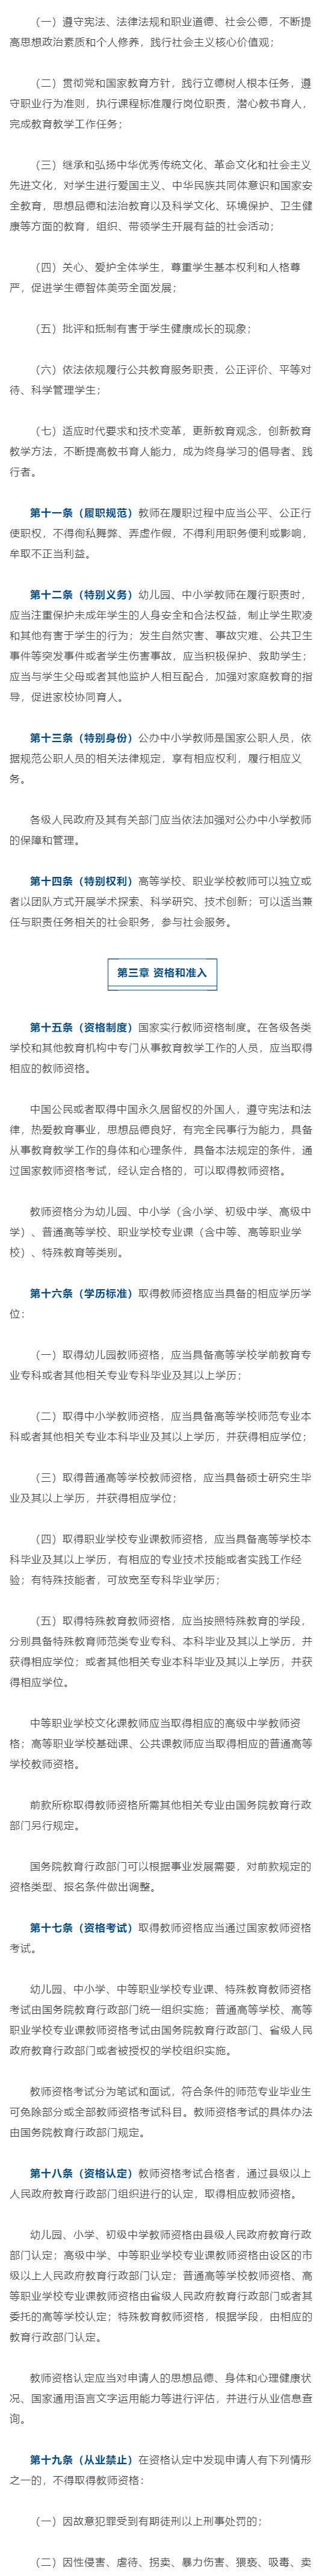 中华人民共和国教师法（修订草案）_壹伴长图2.jpg